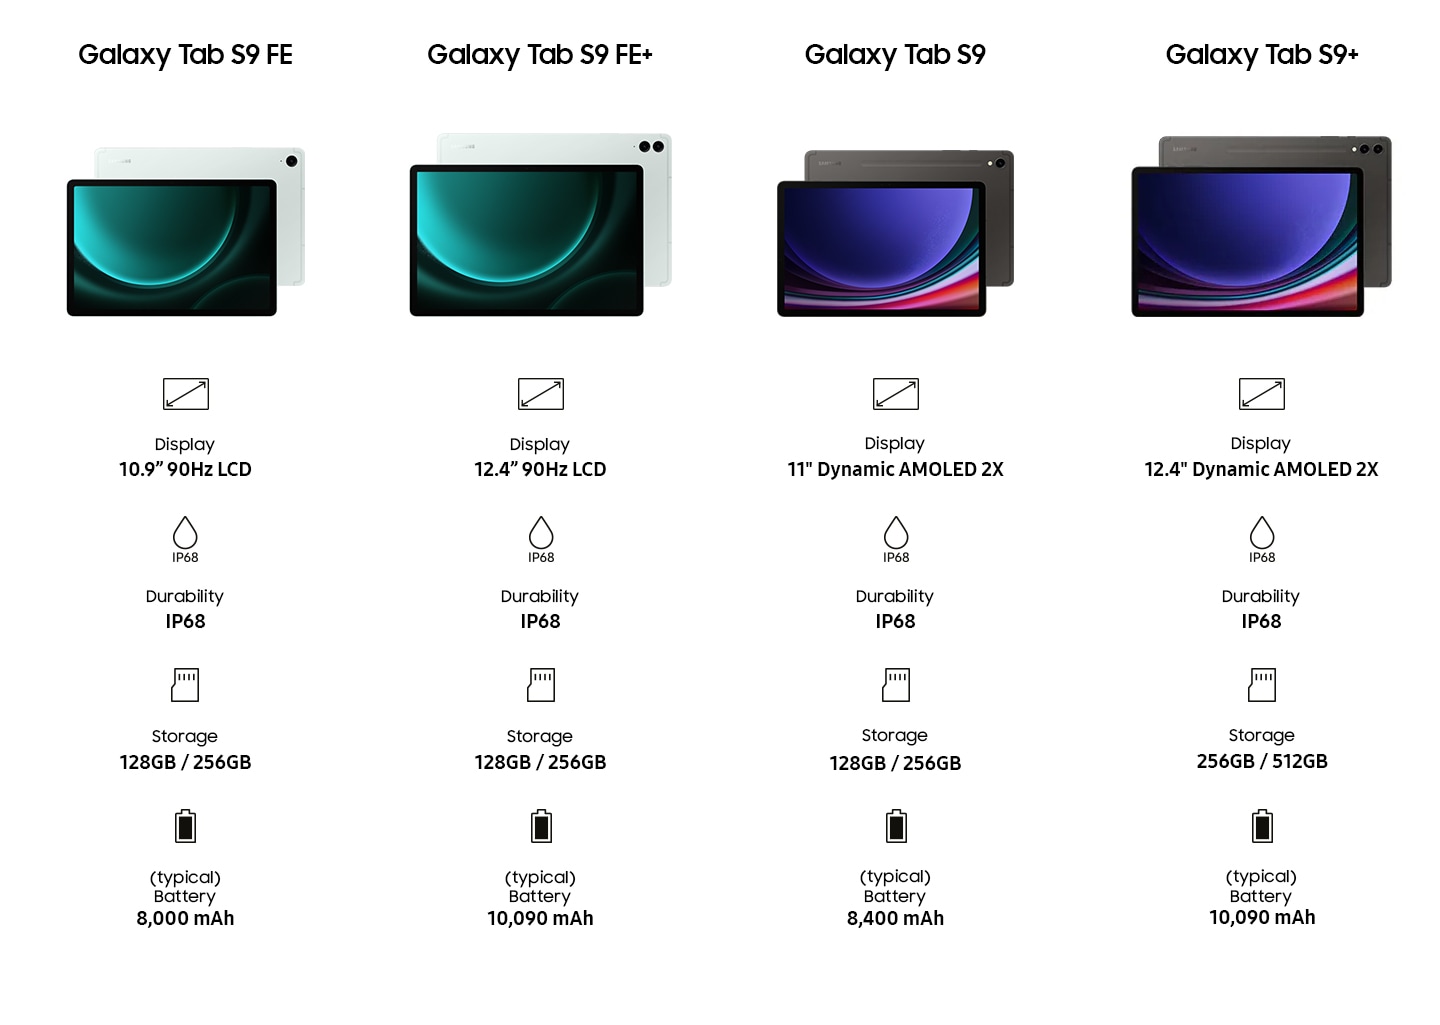 Galaxy Tab S9 FE: Display: 10.9